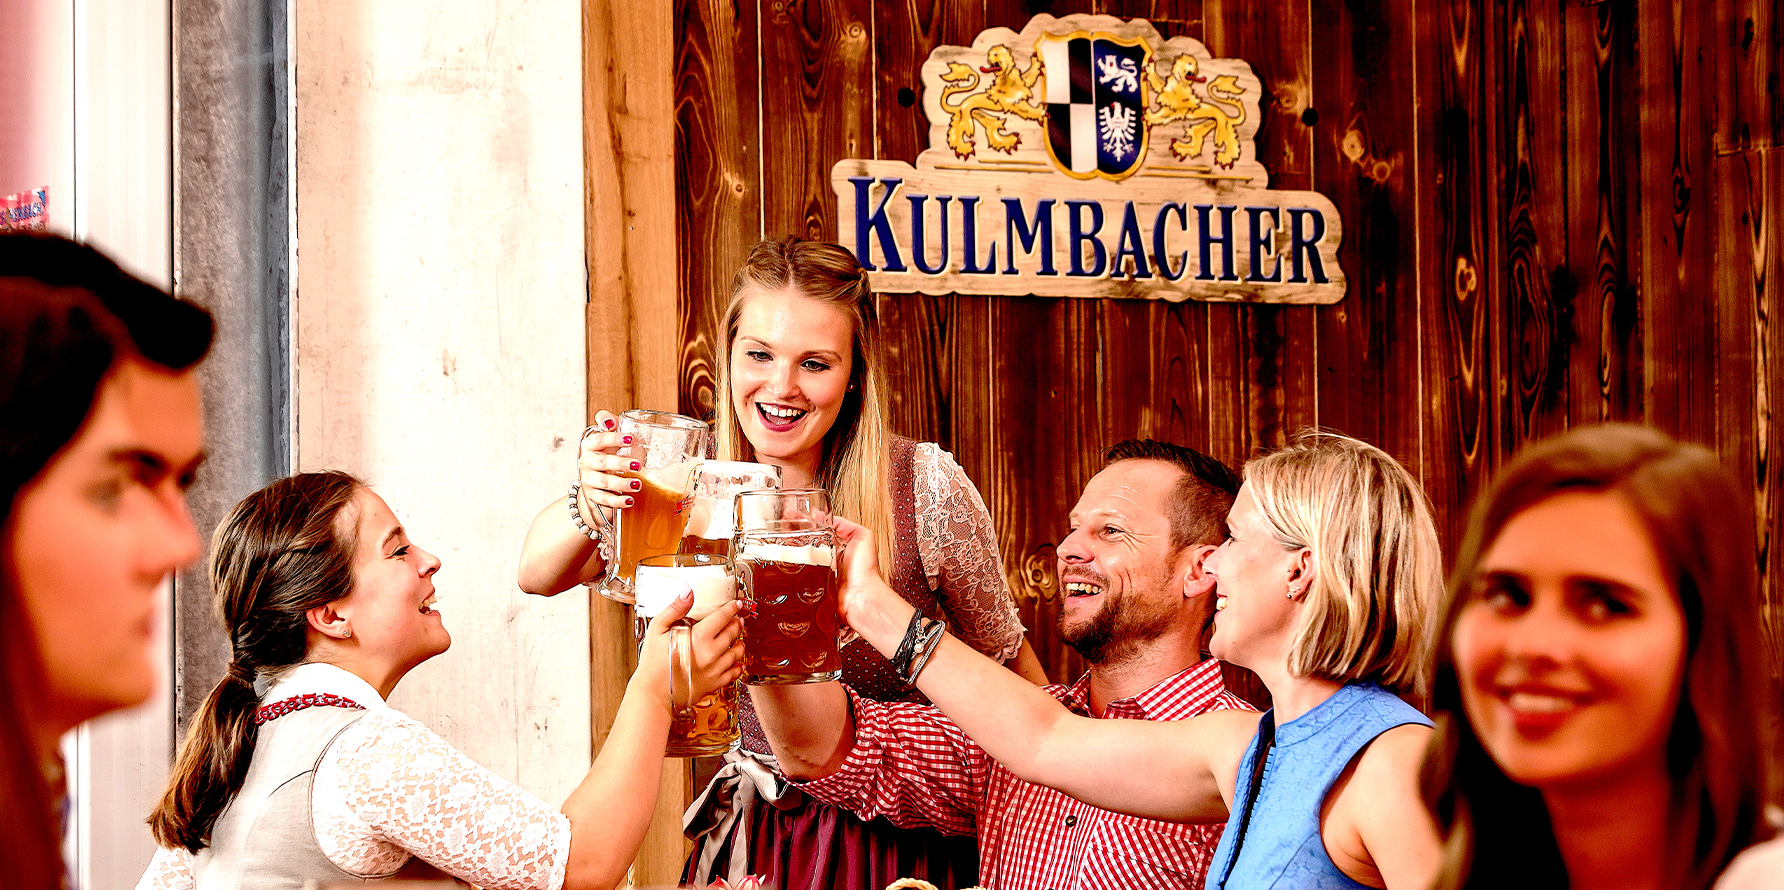 Kulmbacher Bierwoche una festa famosa nel mondo per la cultura birraria.